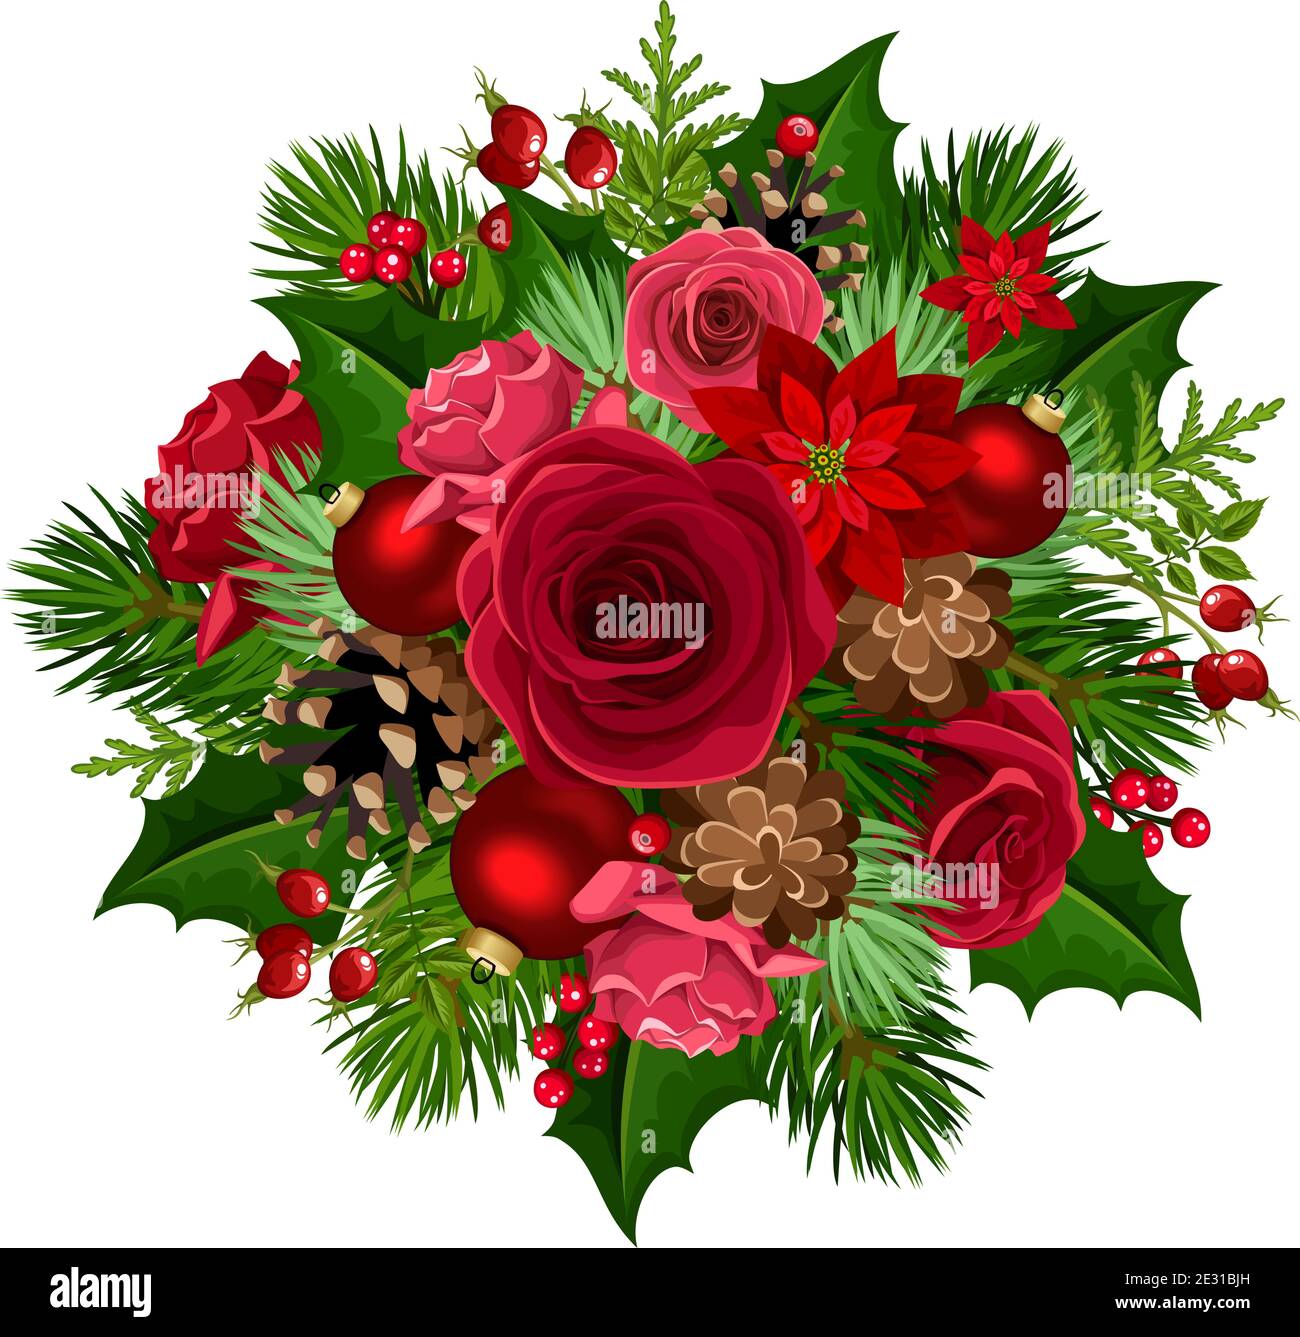 Vektor Weihnachtsstrauß mit roten Rosen, Weihnachtsblumen, Kugeln, Stechpalme, Tannenzweigen und Zapfen isoliert auf weißem Hintergrund. Stock Vektor